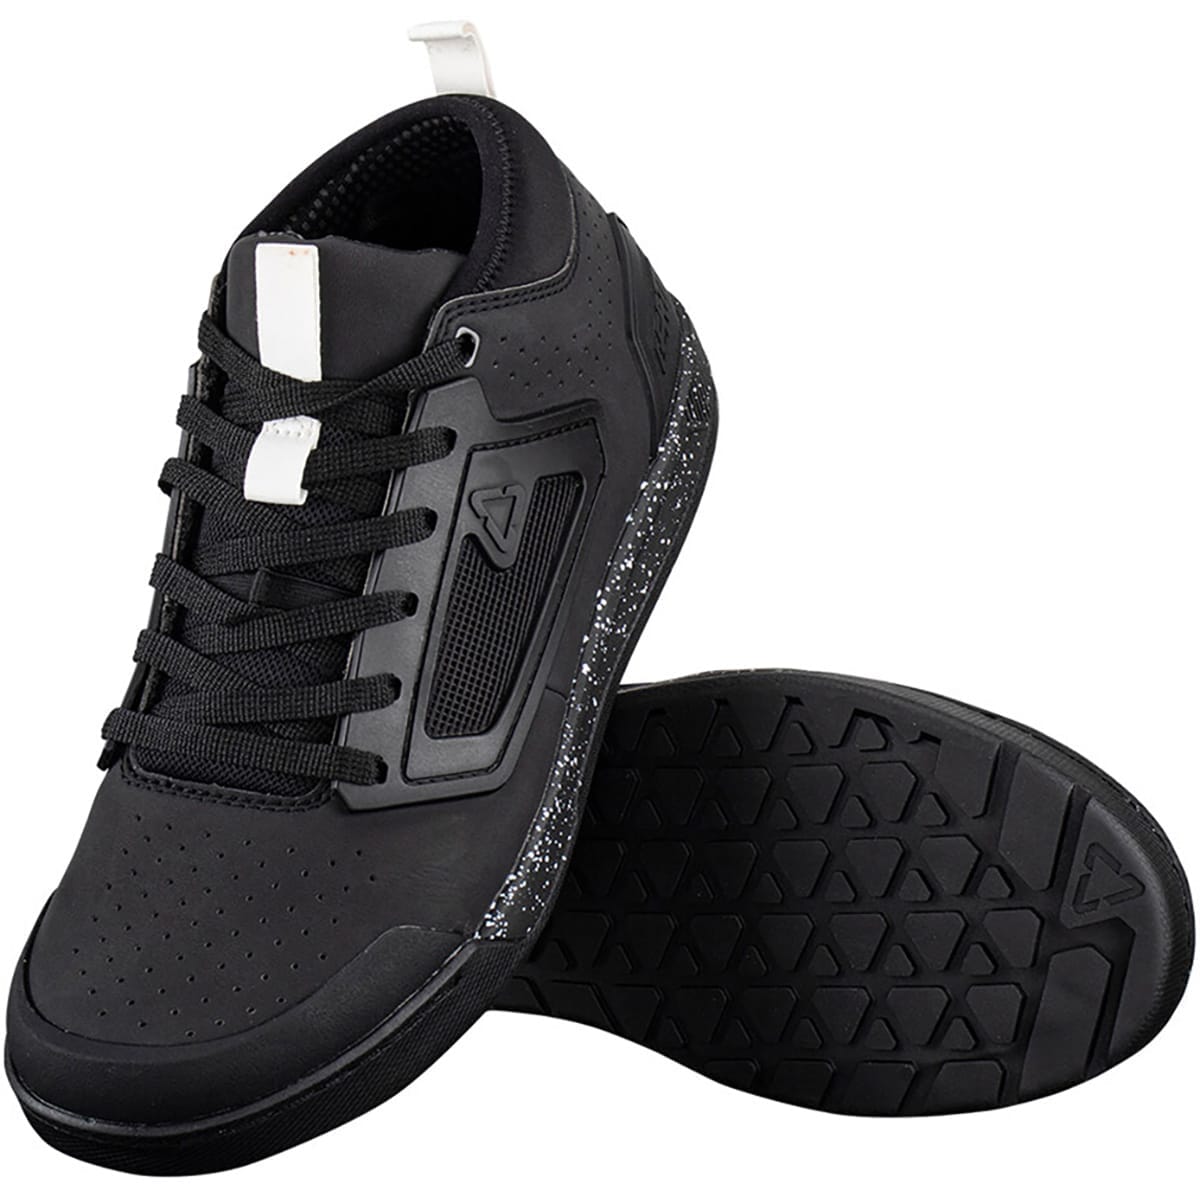 Chaussures VTT LEATT 3 FLAT Noir